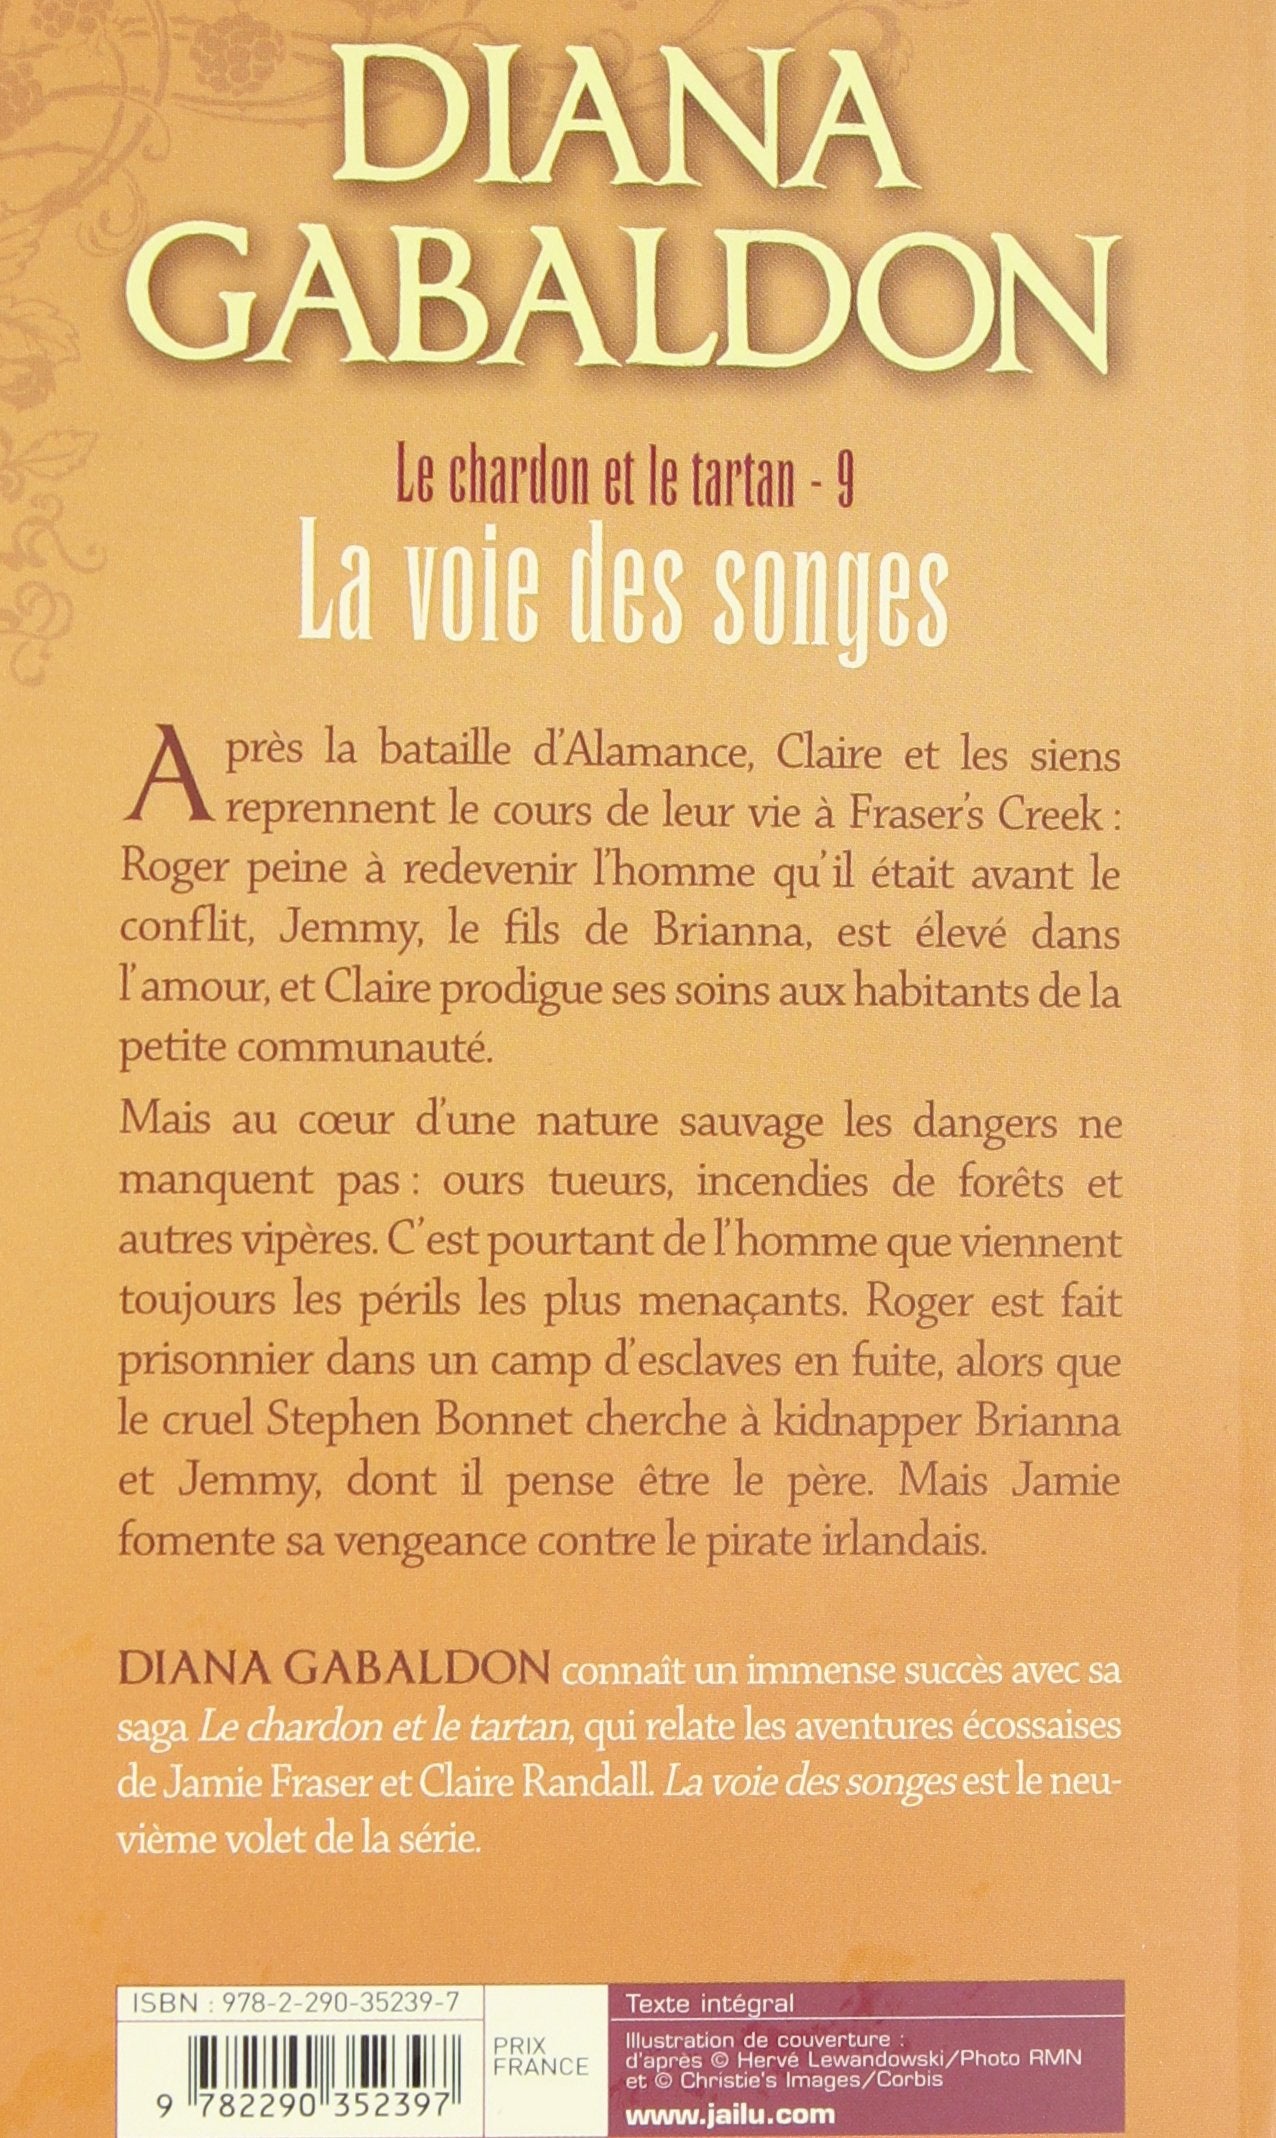 Le chardon et le tartan # 9 : La voie des songes (Diana Gabaldon)